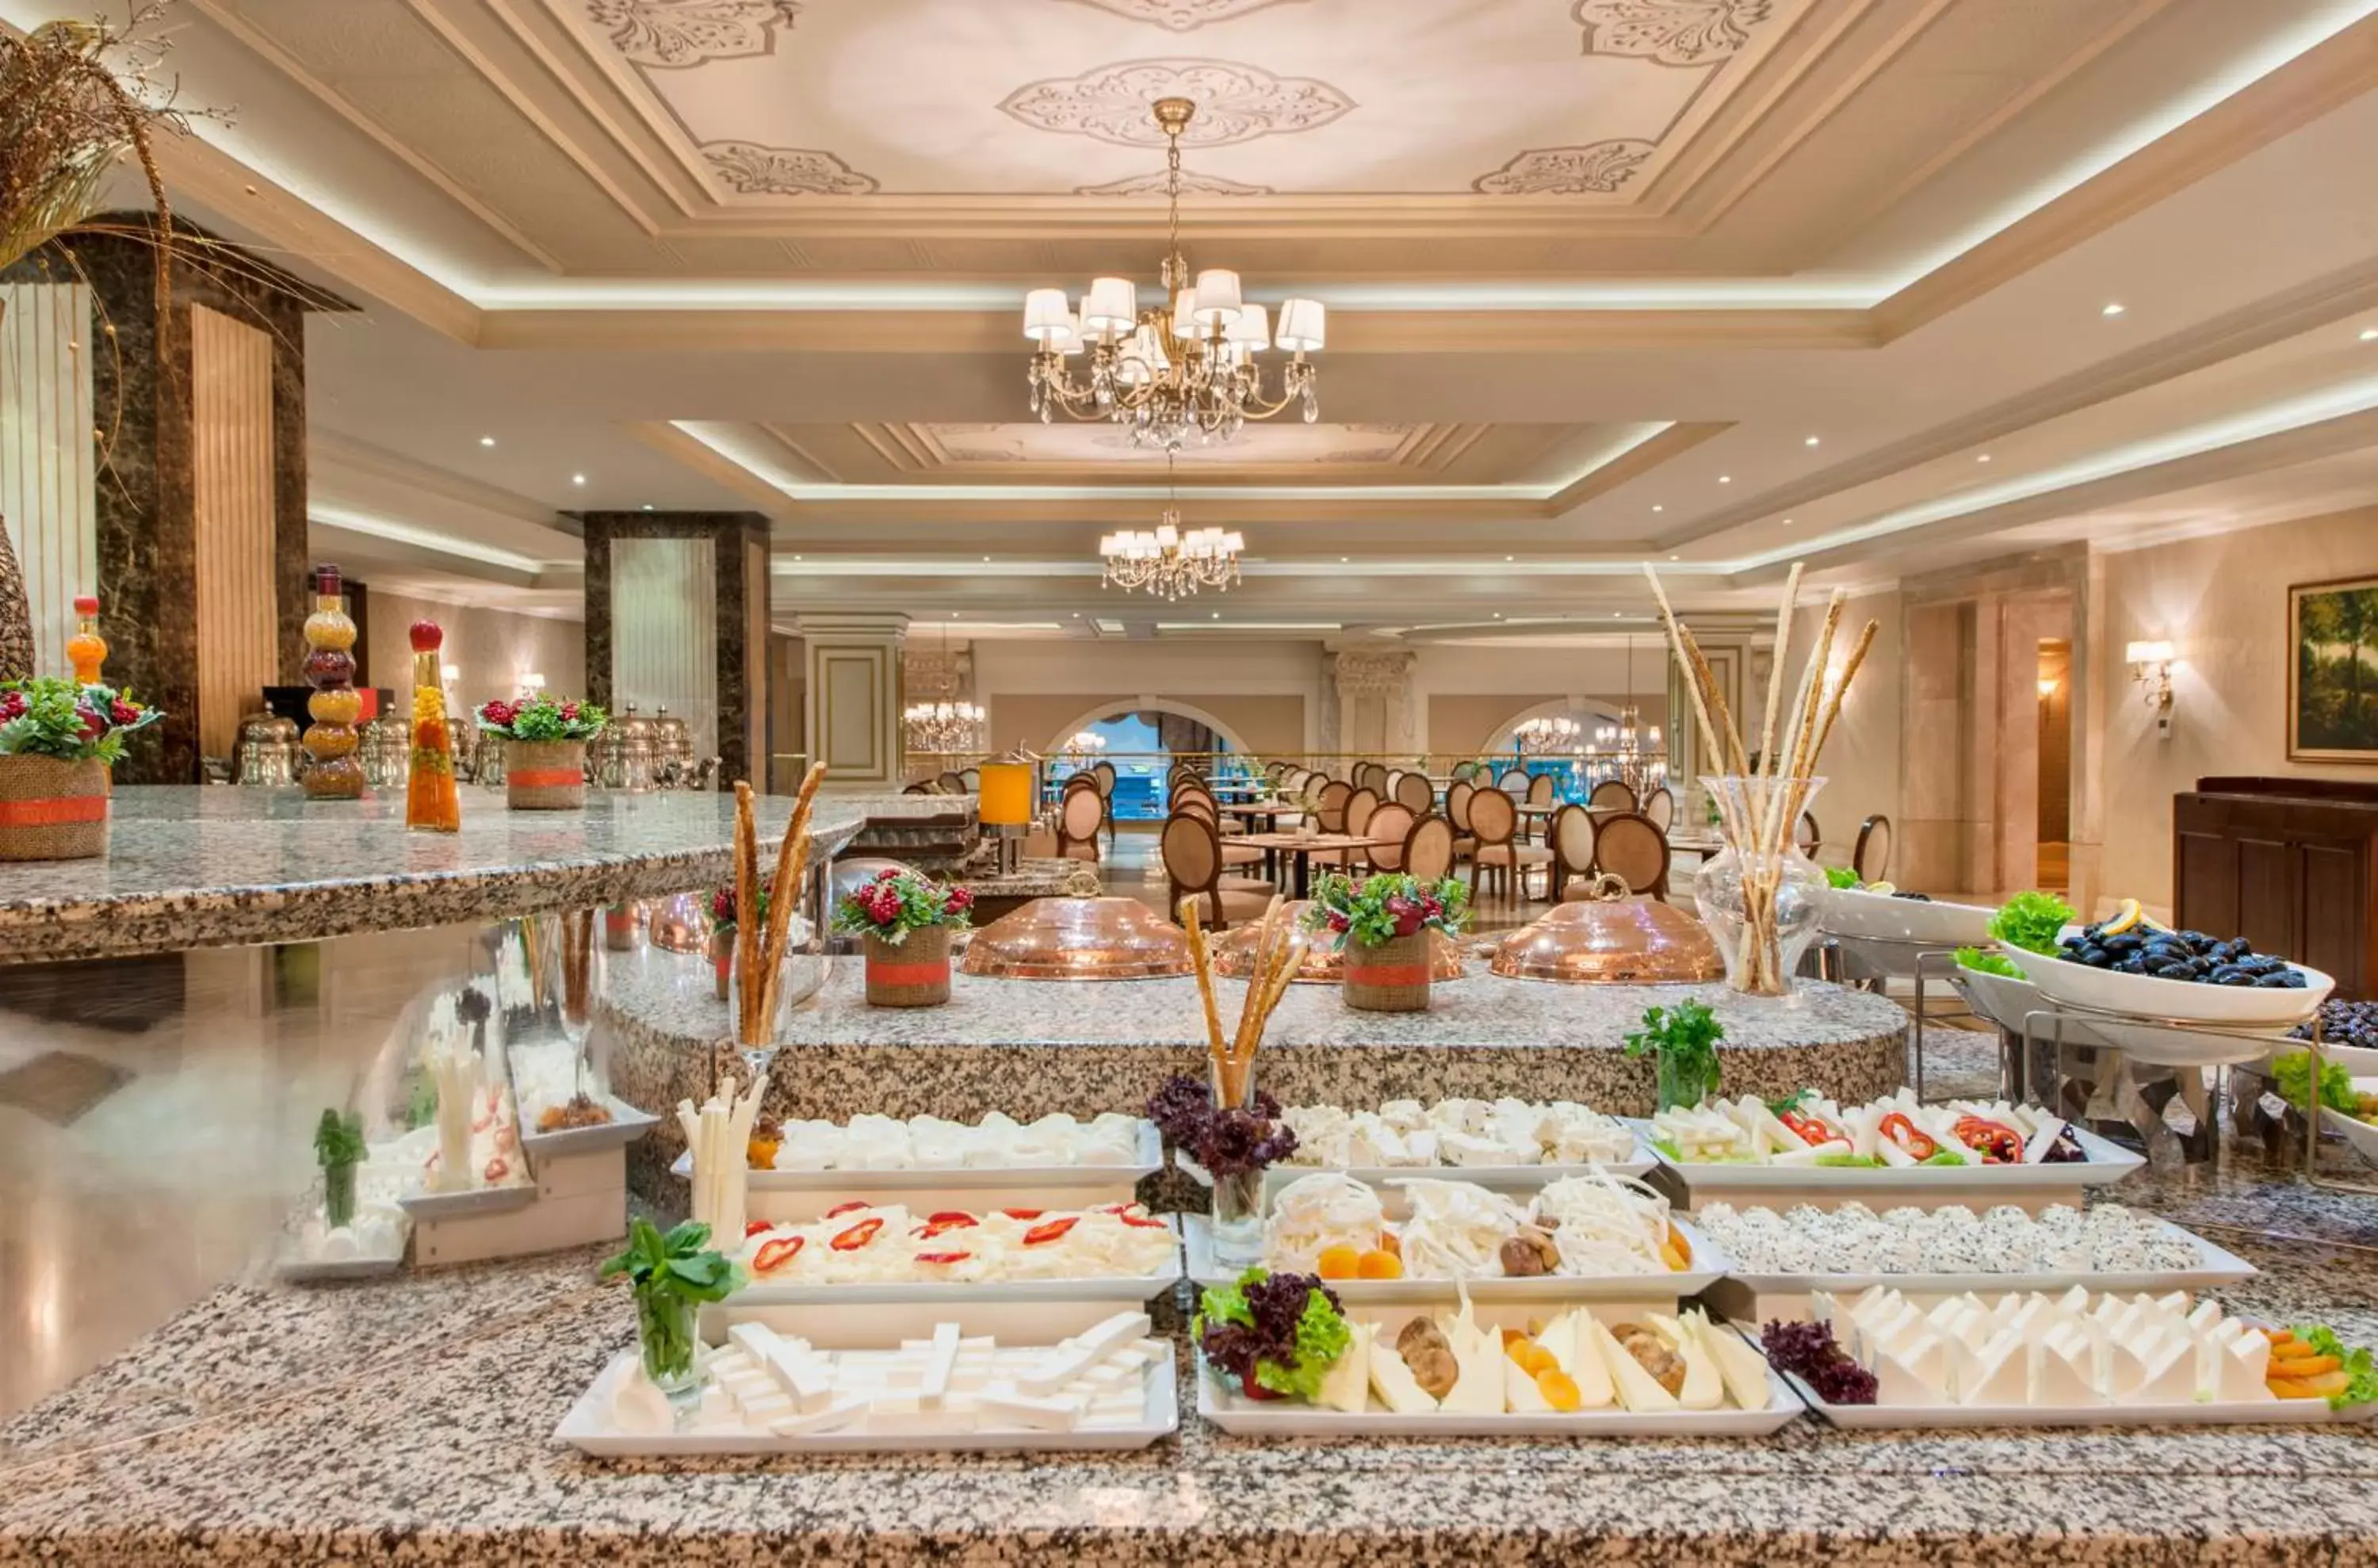 Buffet breakfast, Banquet Facilities in Elite World Van Hotel